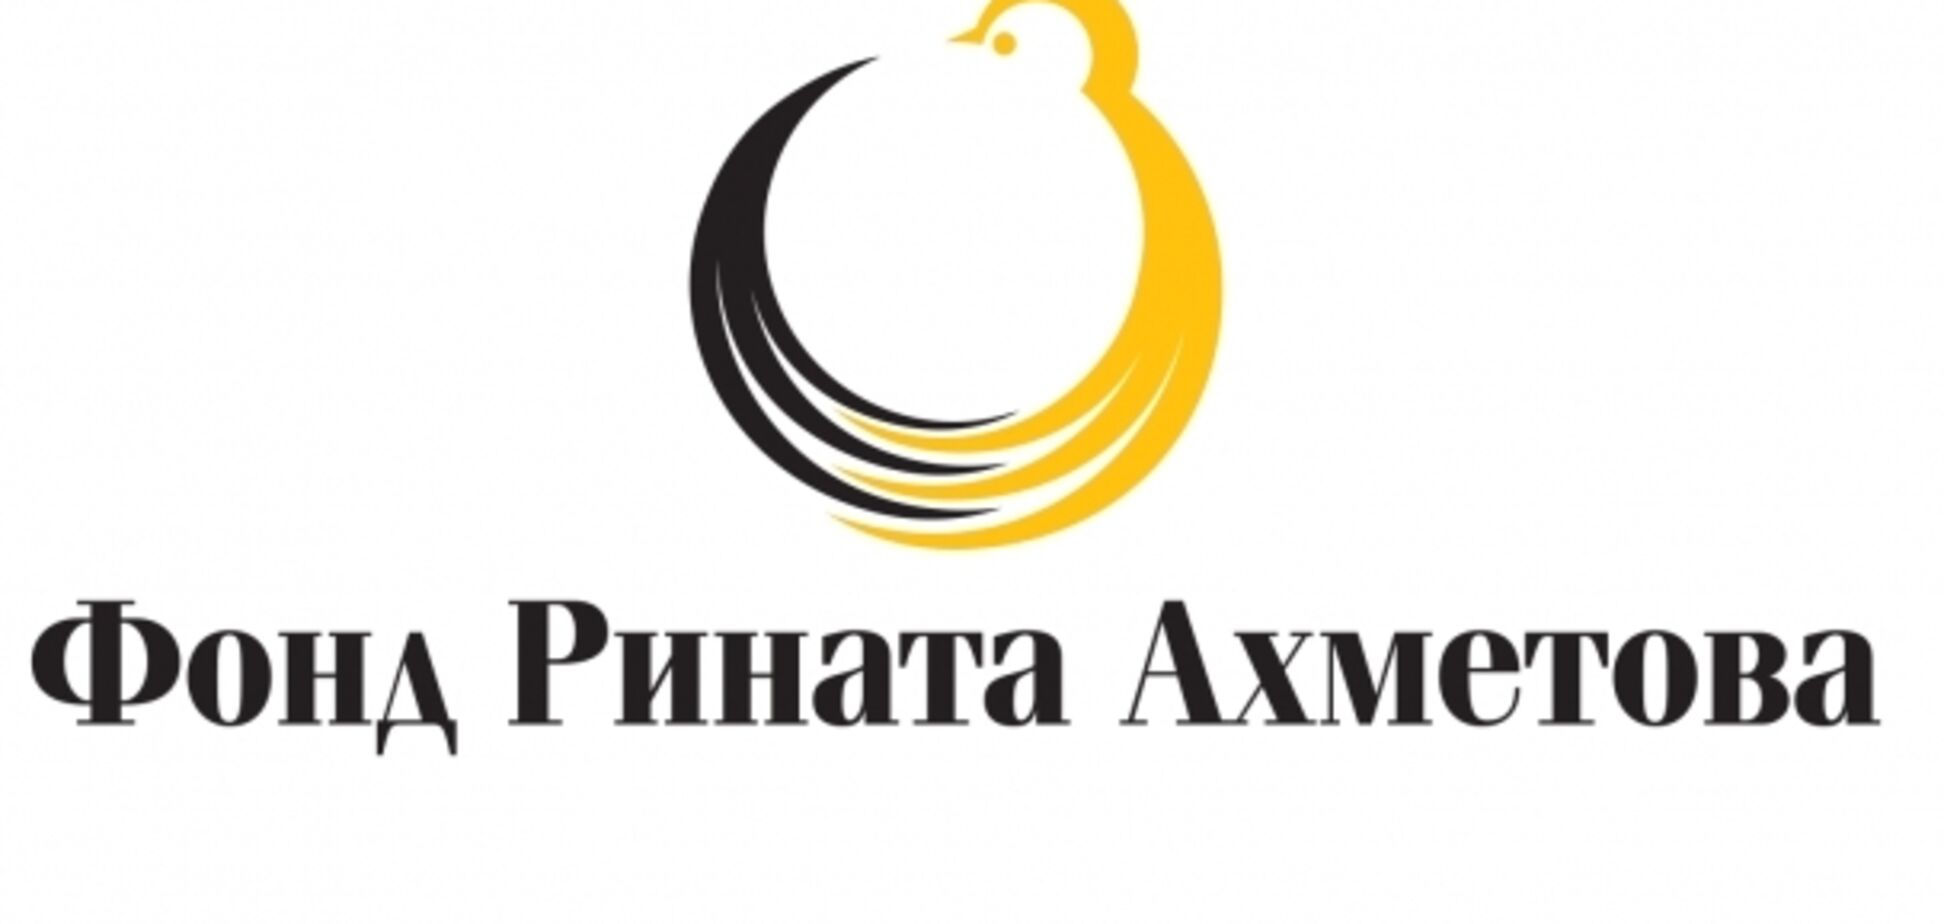 Фонд  Ахметова назвали самой масштабной благотворительной организацией Украины